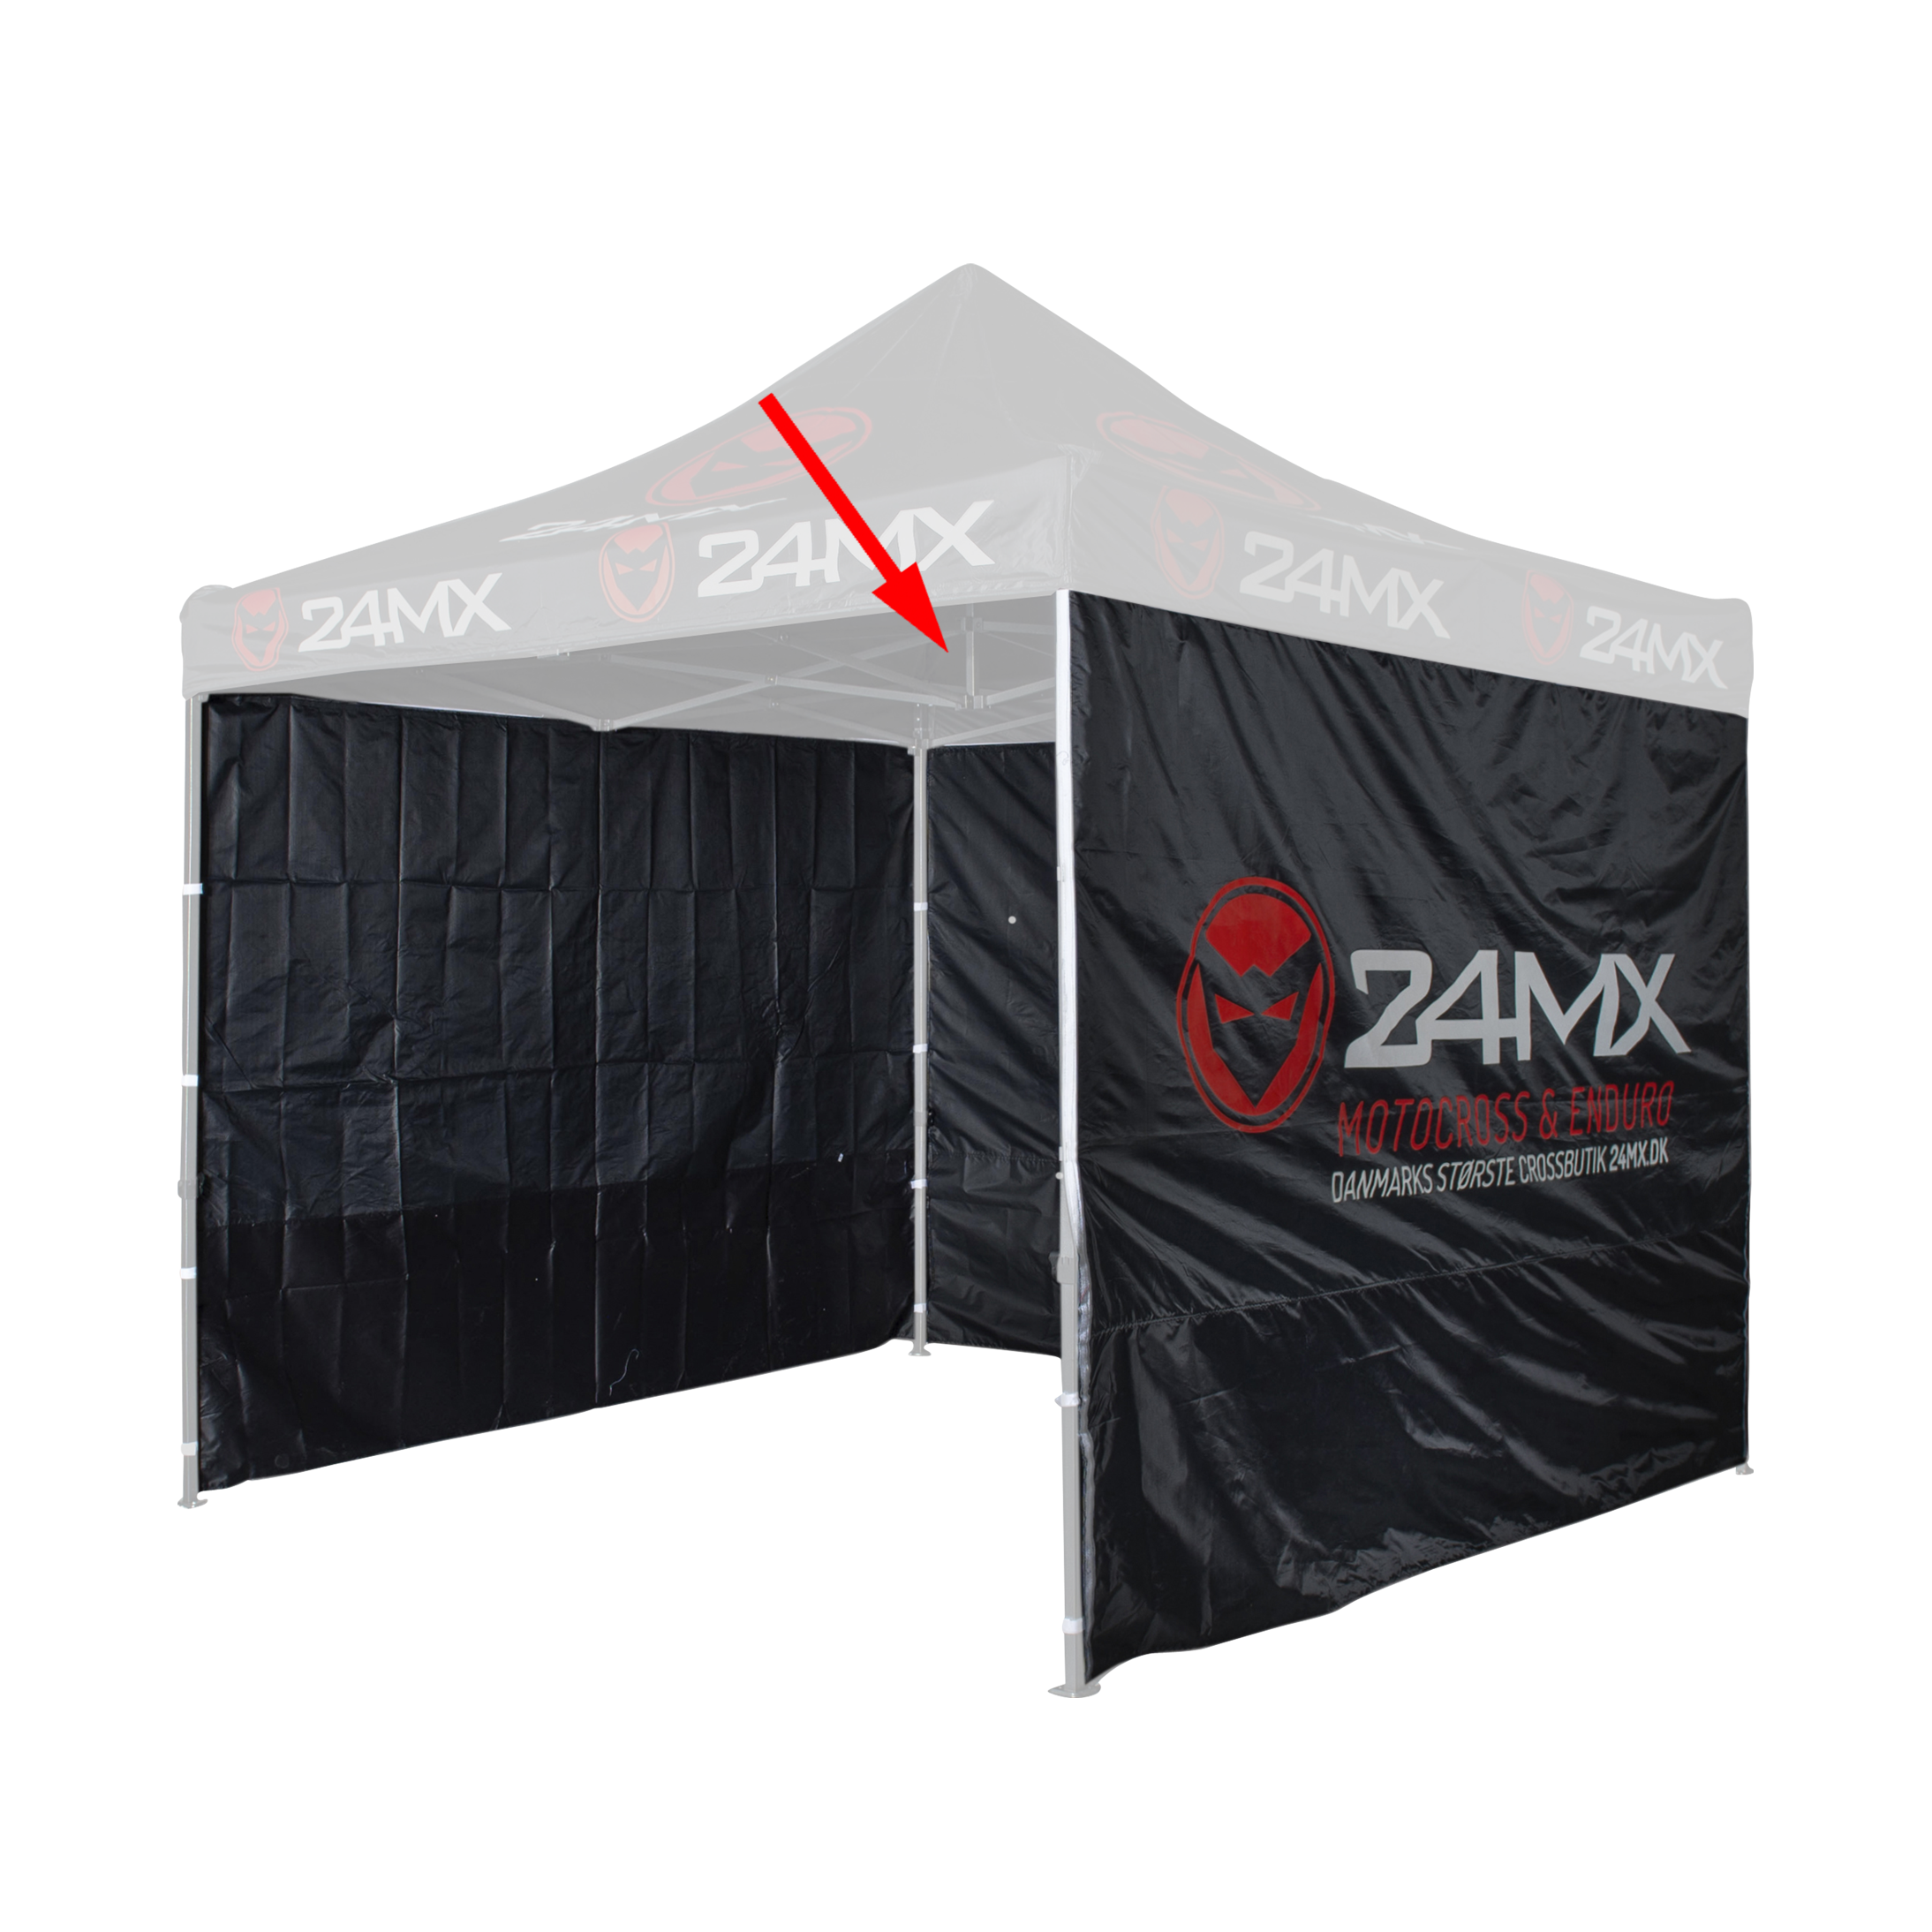 Gebeurt hoe Maak een naam 24MX 3-Pack Tent Walls Black - Now 21% Savings | 24MX